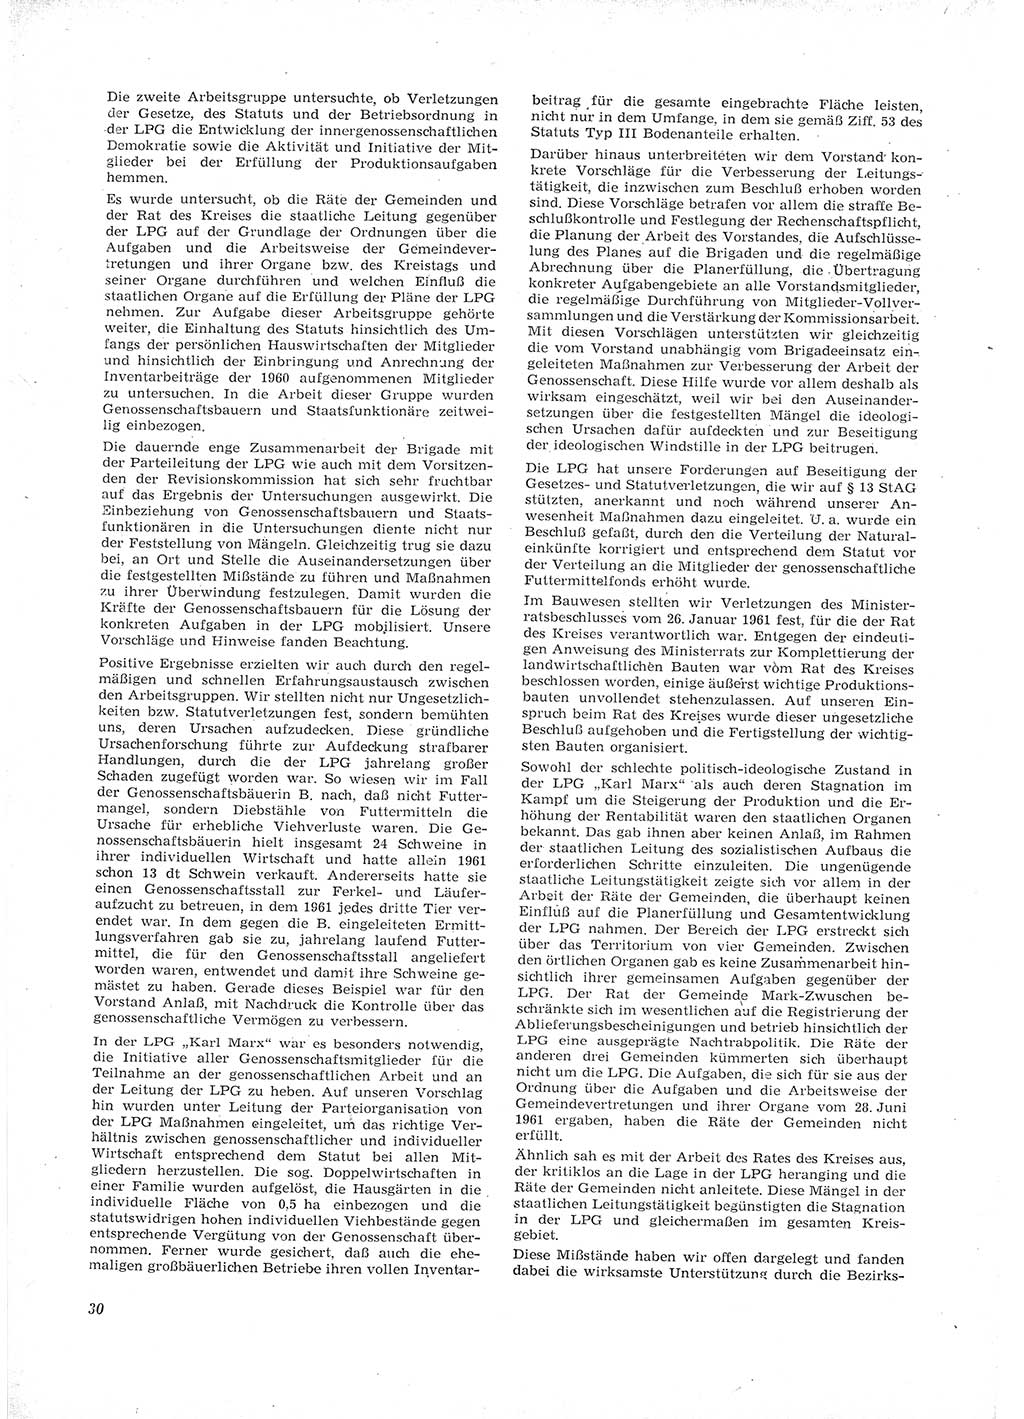 Neue Justiz (NJ), Zeitschrift für Recht und Rechtswissenschaft [Deutsche Demokratische Republik (DDR)], 16. Jahrgang 1962, Seite 30 (NJ DDR 1962, S. 30)